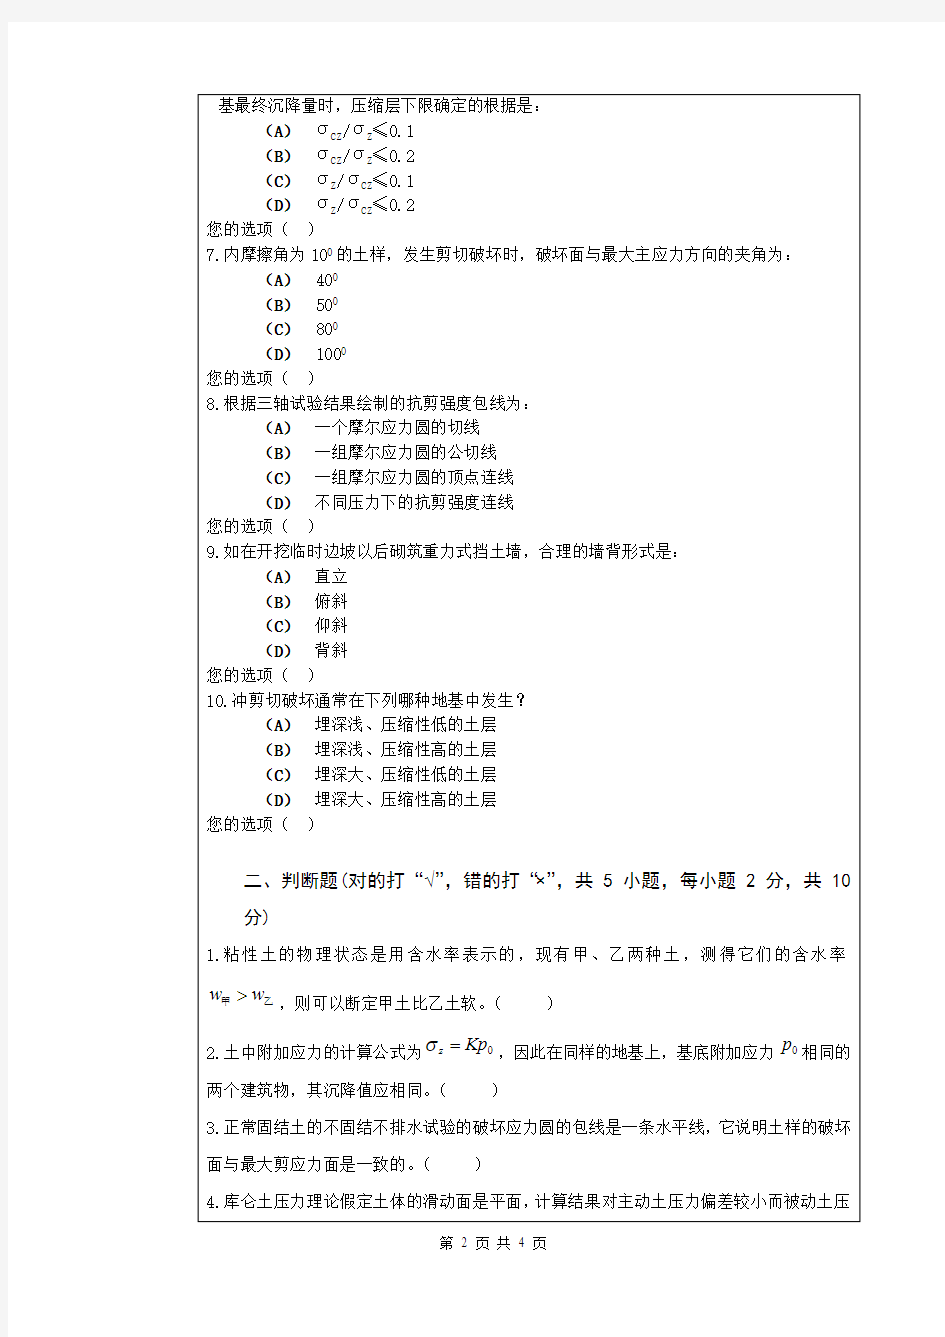 武汉科技大学土力学2019年考研真题试题(含标准答案)